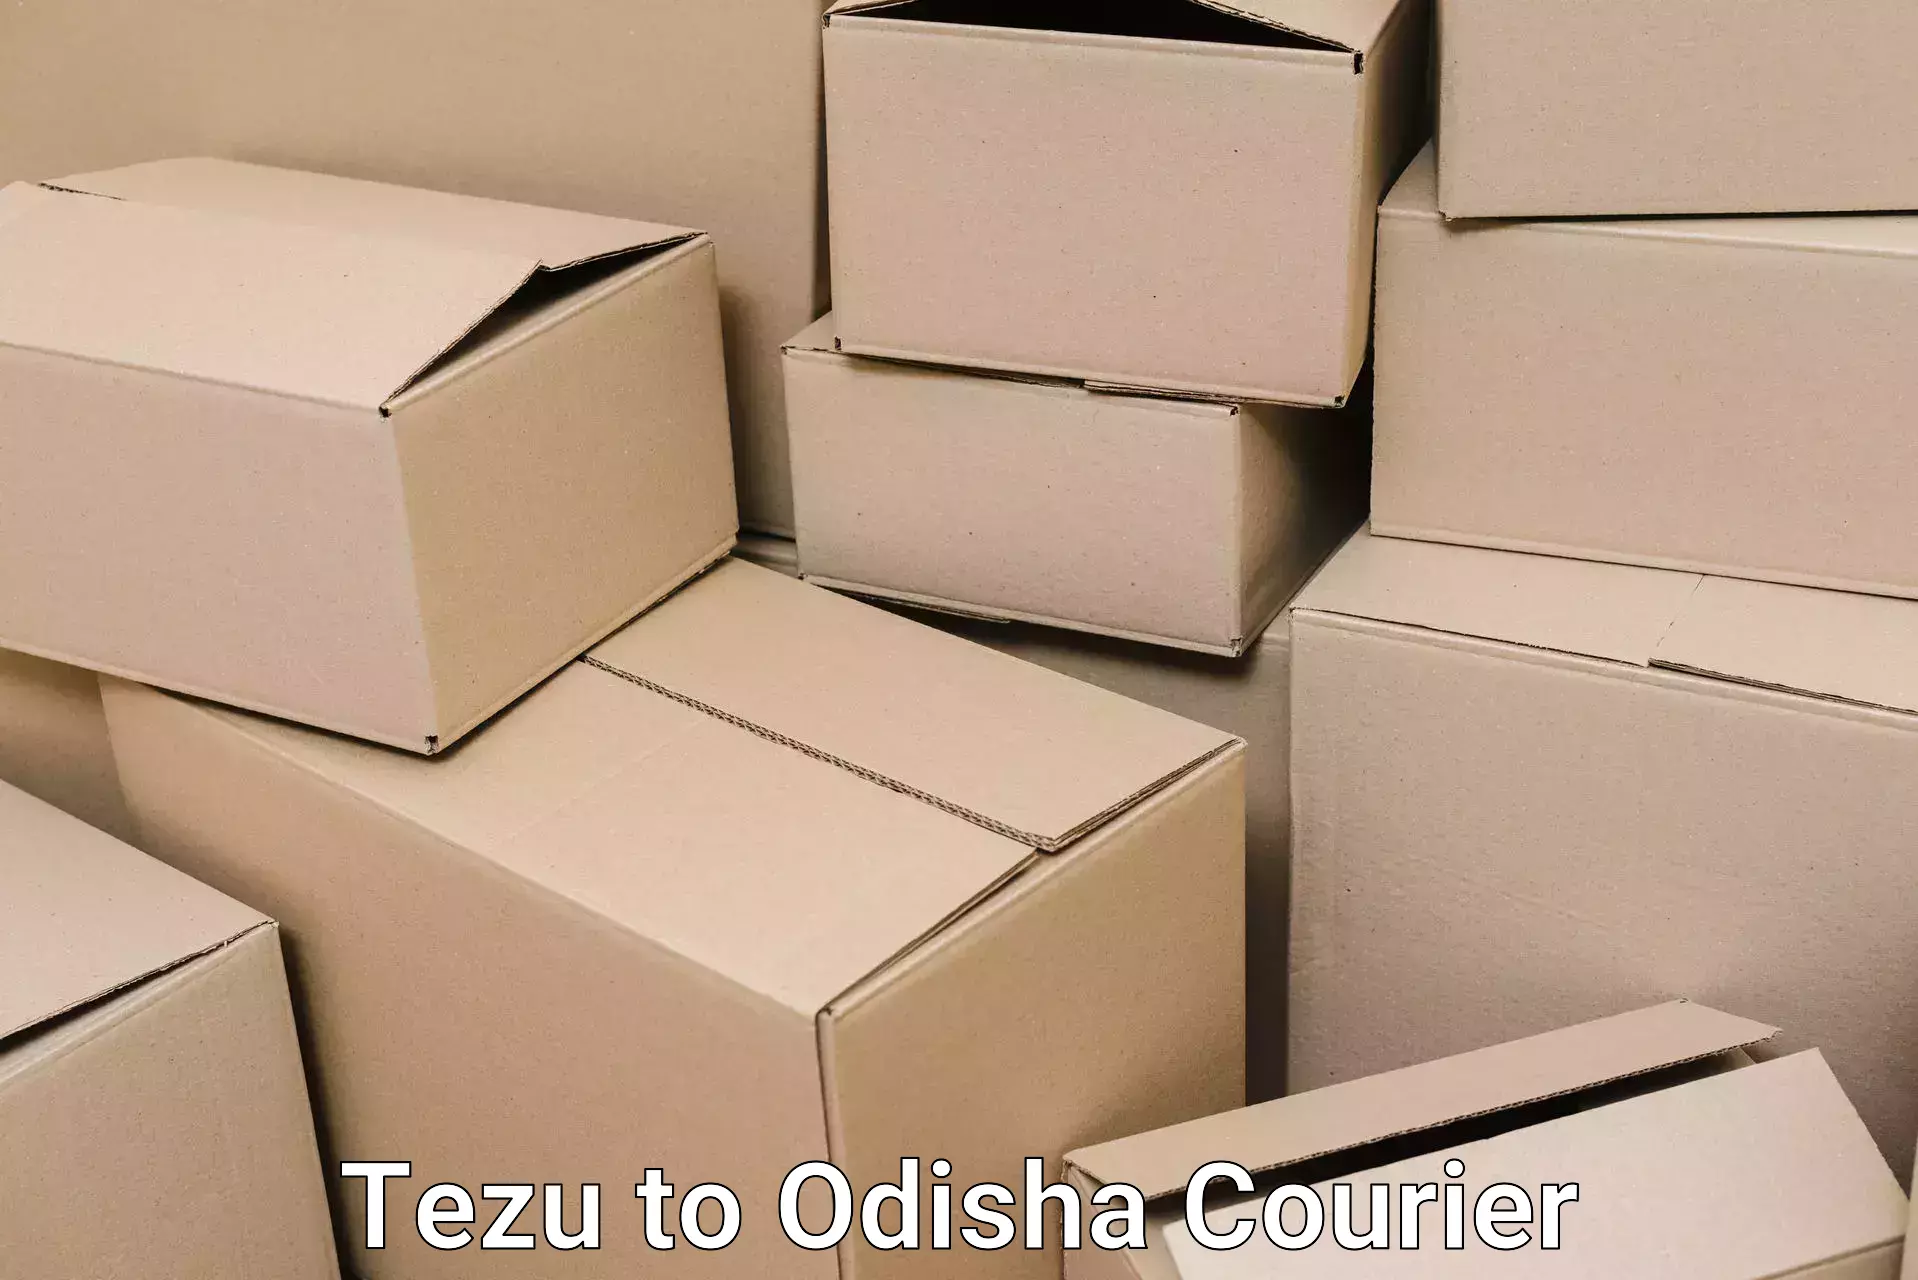 Professional furniture shifting in Tezu to Tangi